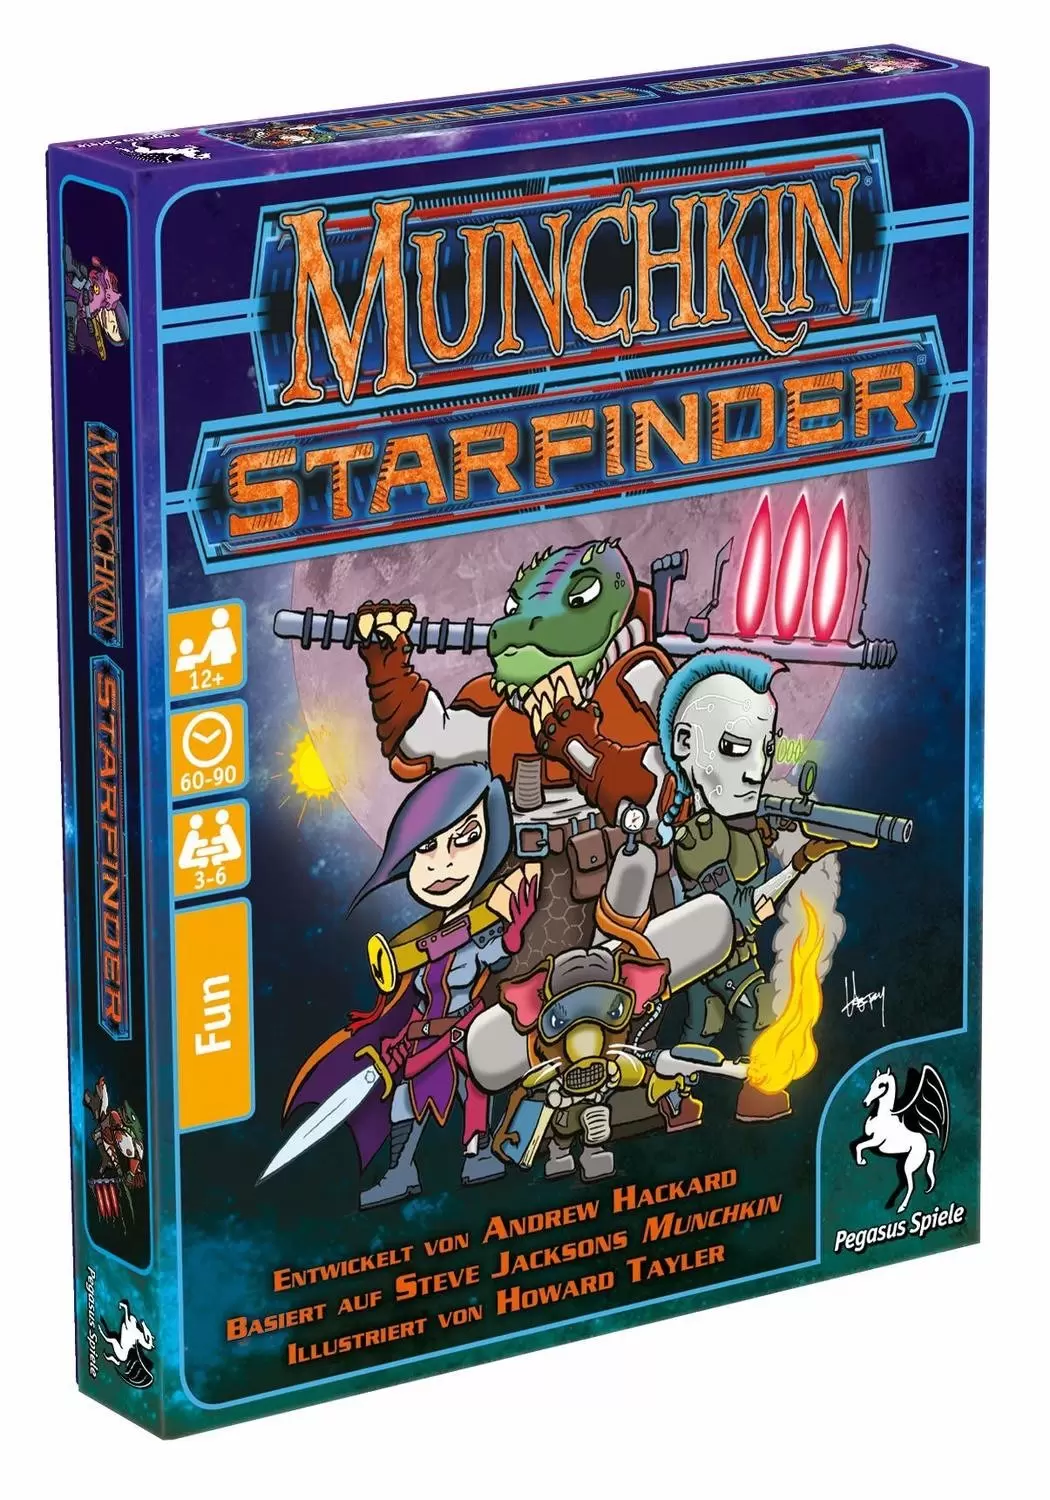 Munchkin - Munchkin Starfinder